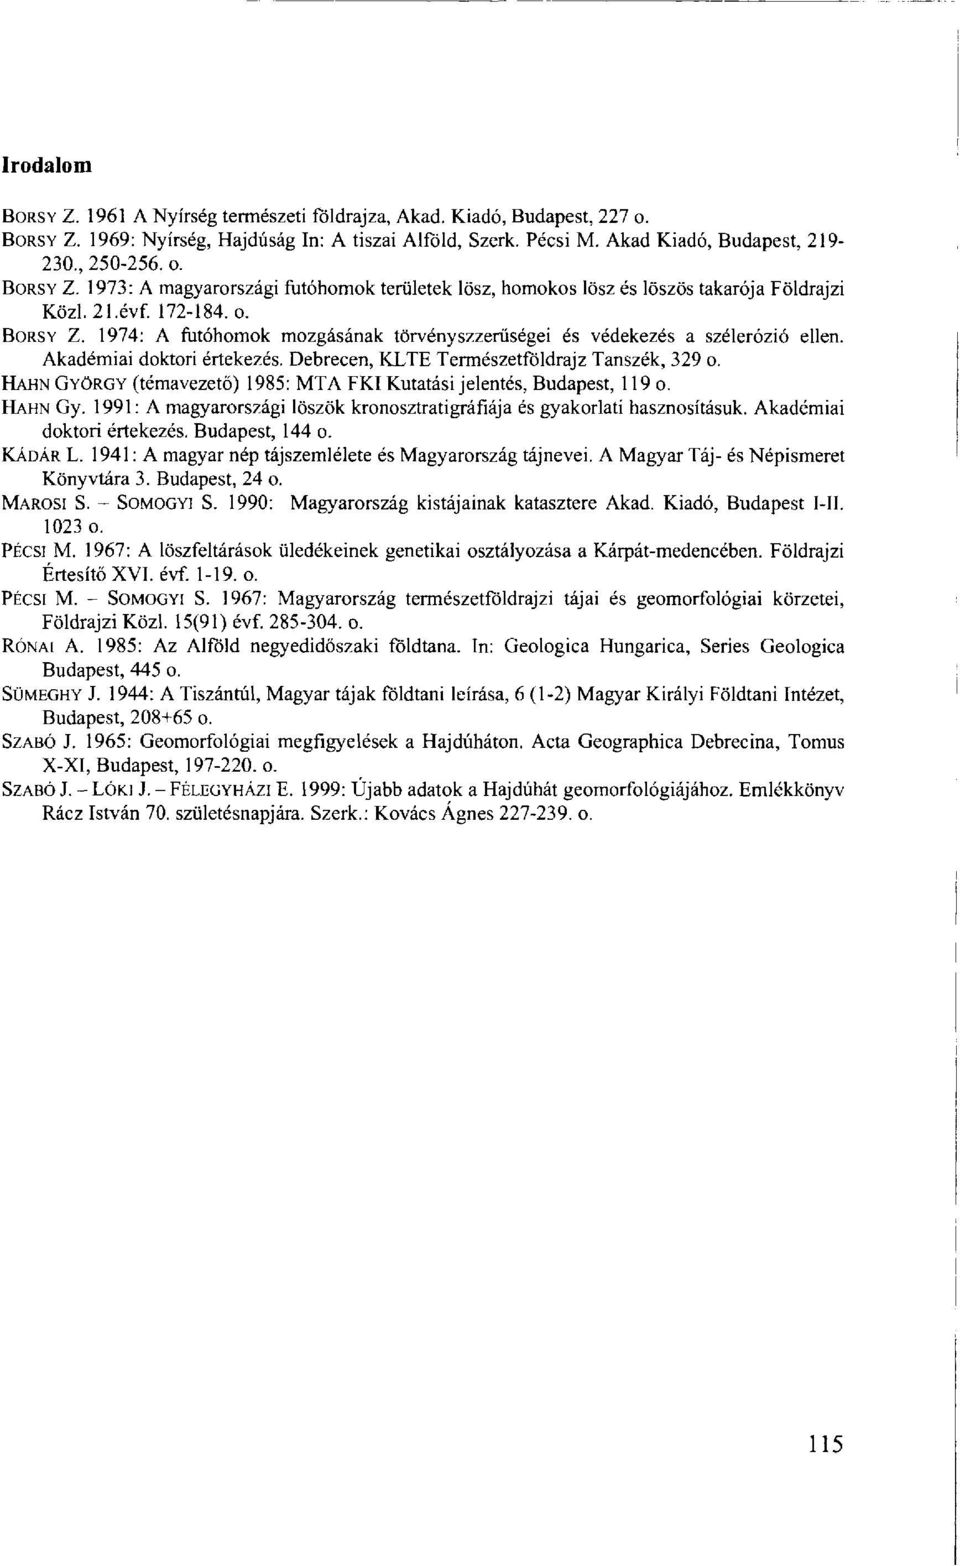 HAHN GYÖRGY (témavezető) 1985: MTA FKI Kutatási jelentés, Budapest, 119 o. HAHN Gy. 1991: A magyarországi löszök kronosztratigráfiája és gyakorlati hasznosításuk. Akadémiai doktori értekezés.